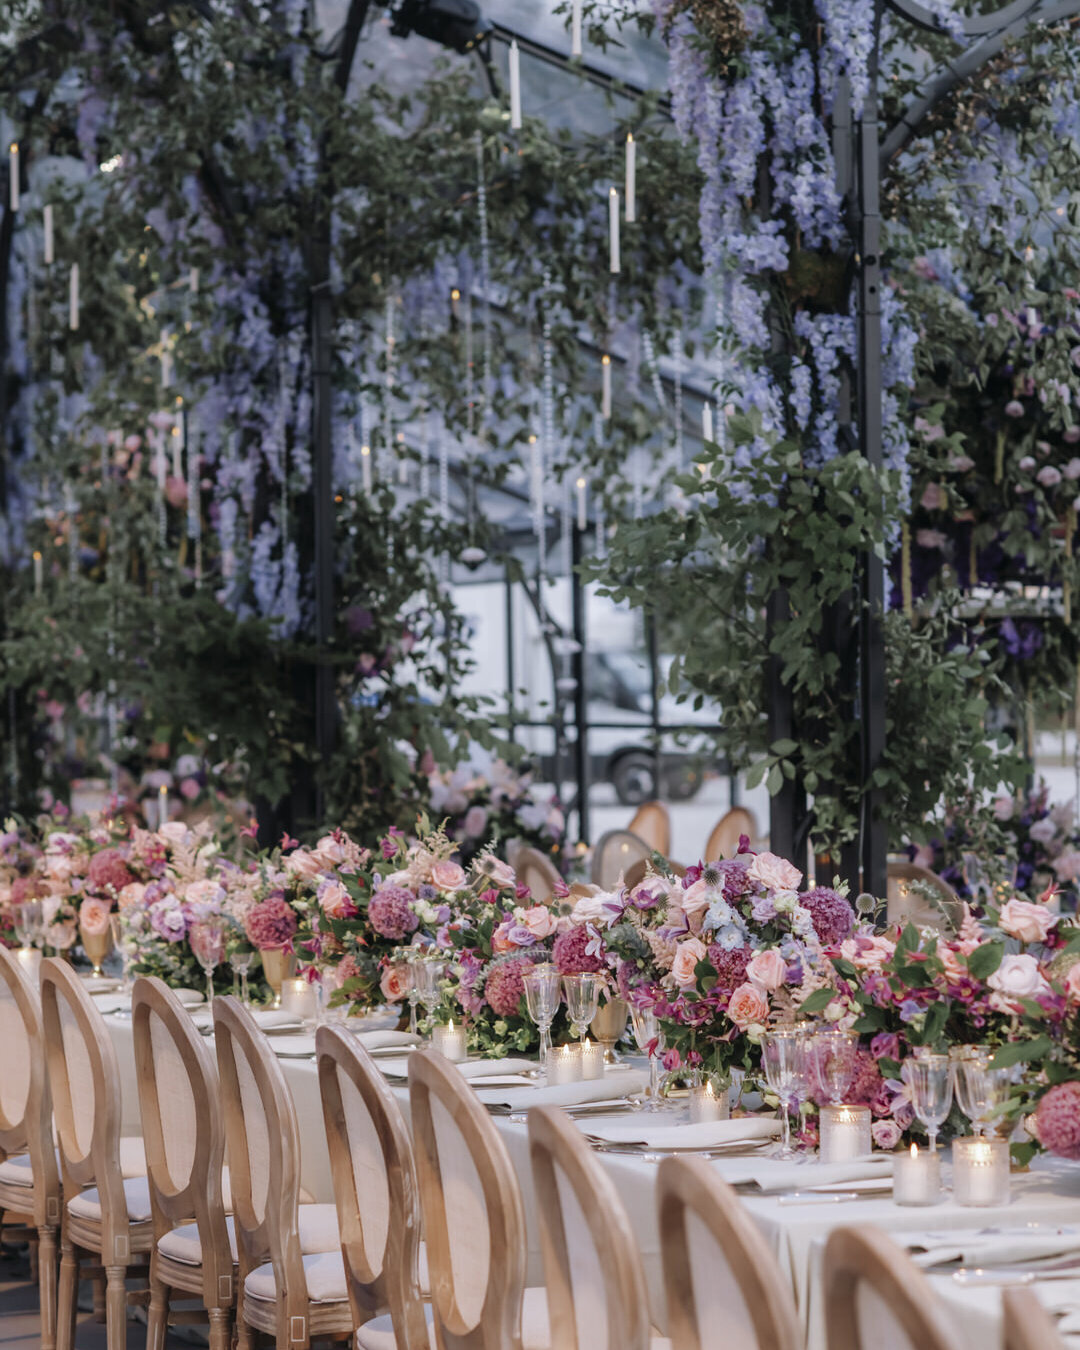 Paris Destination Wedding at Chateau de Chantilly by Alejandra Poupel Events close up big dinner table 3